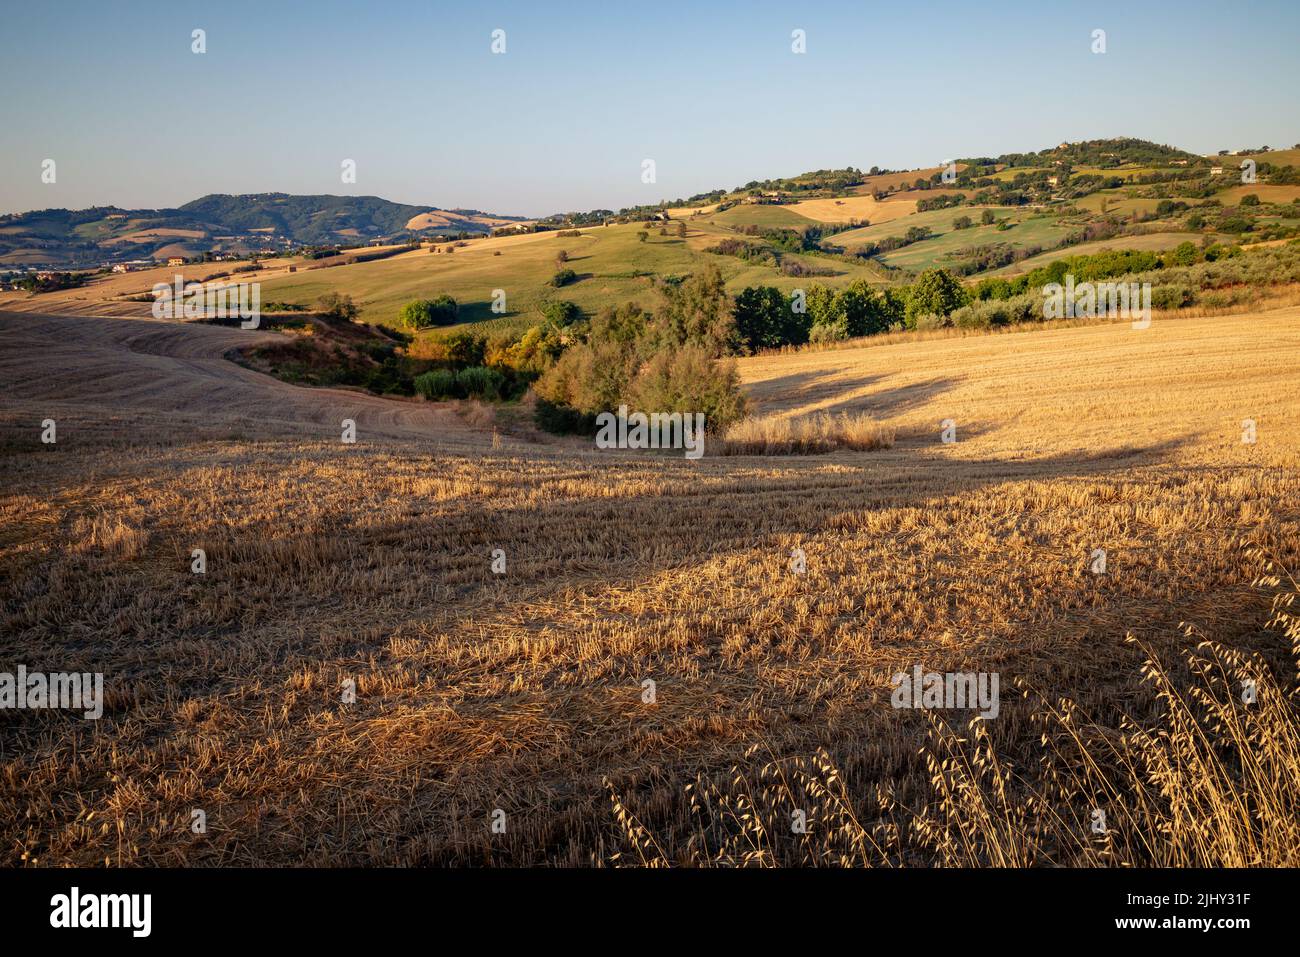 Vista dei campi nei pressi di Tavullia in provincia di Pesaro e Urbino nelle Marche, al mattino dopo l'alba Foto Stock